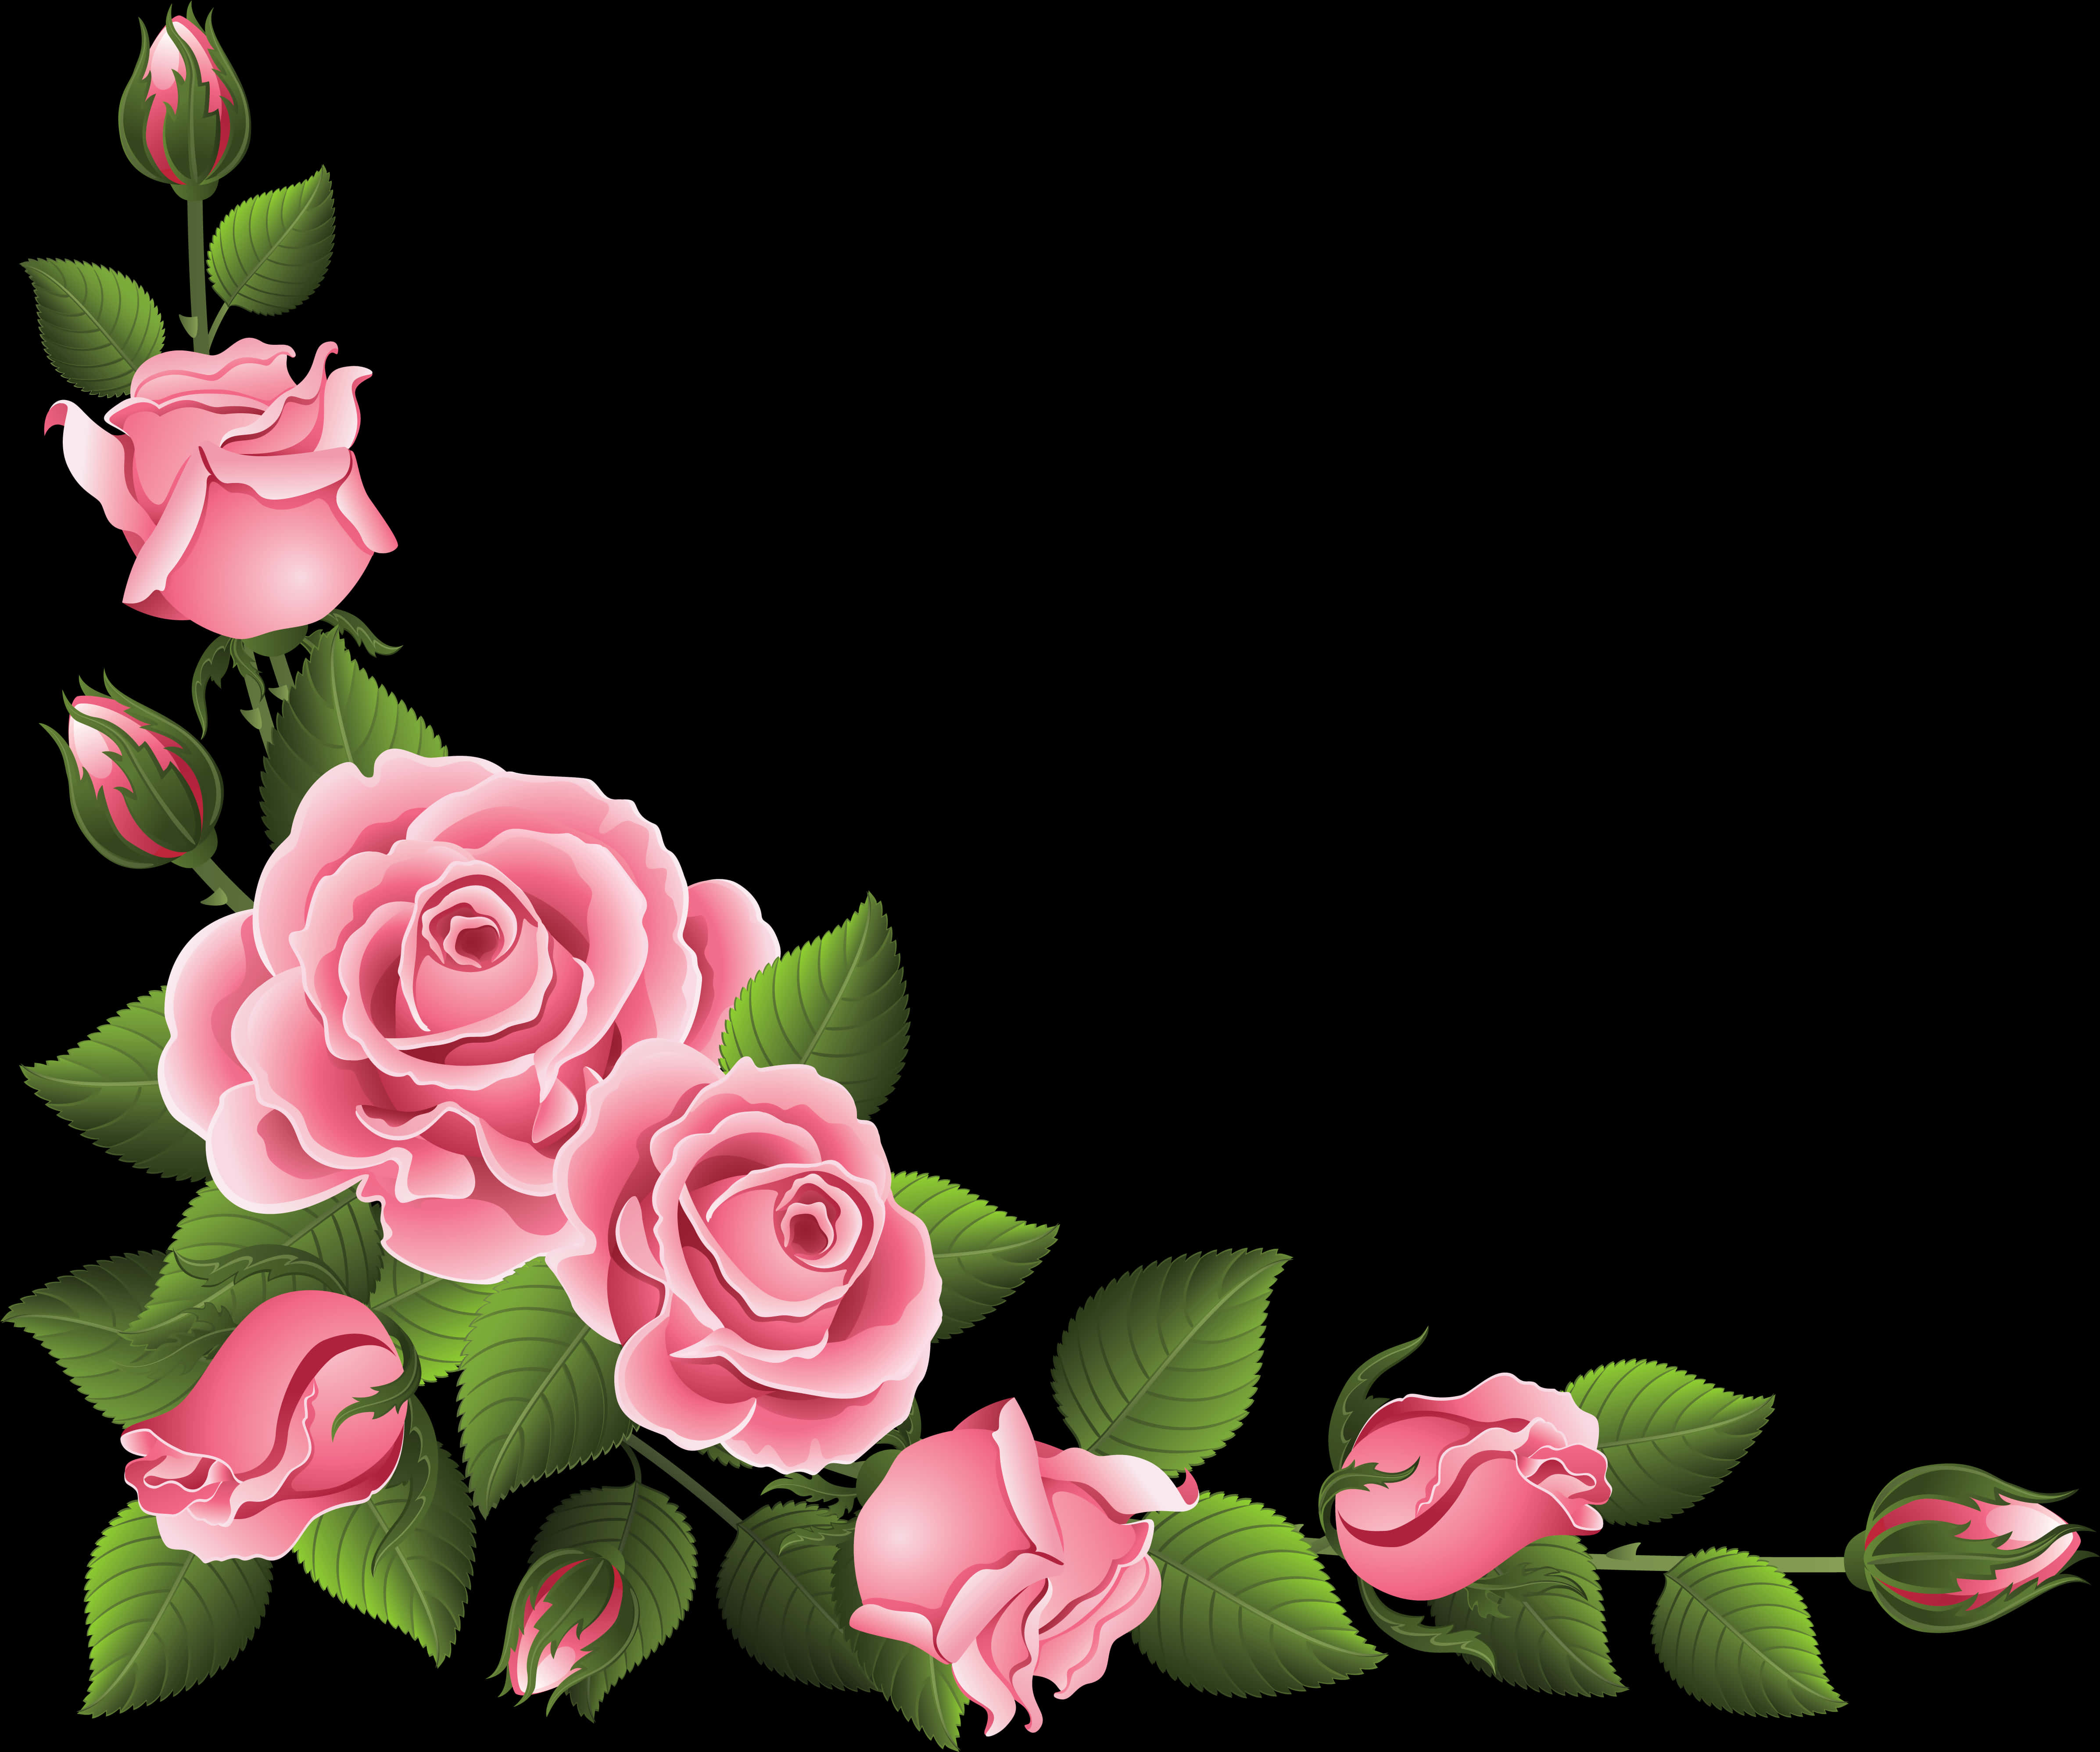 Pink Roses Floral Border Design